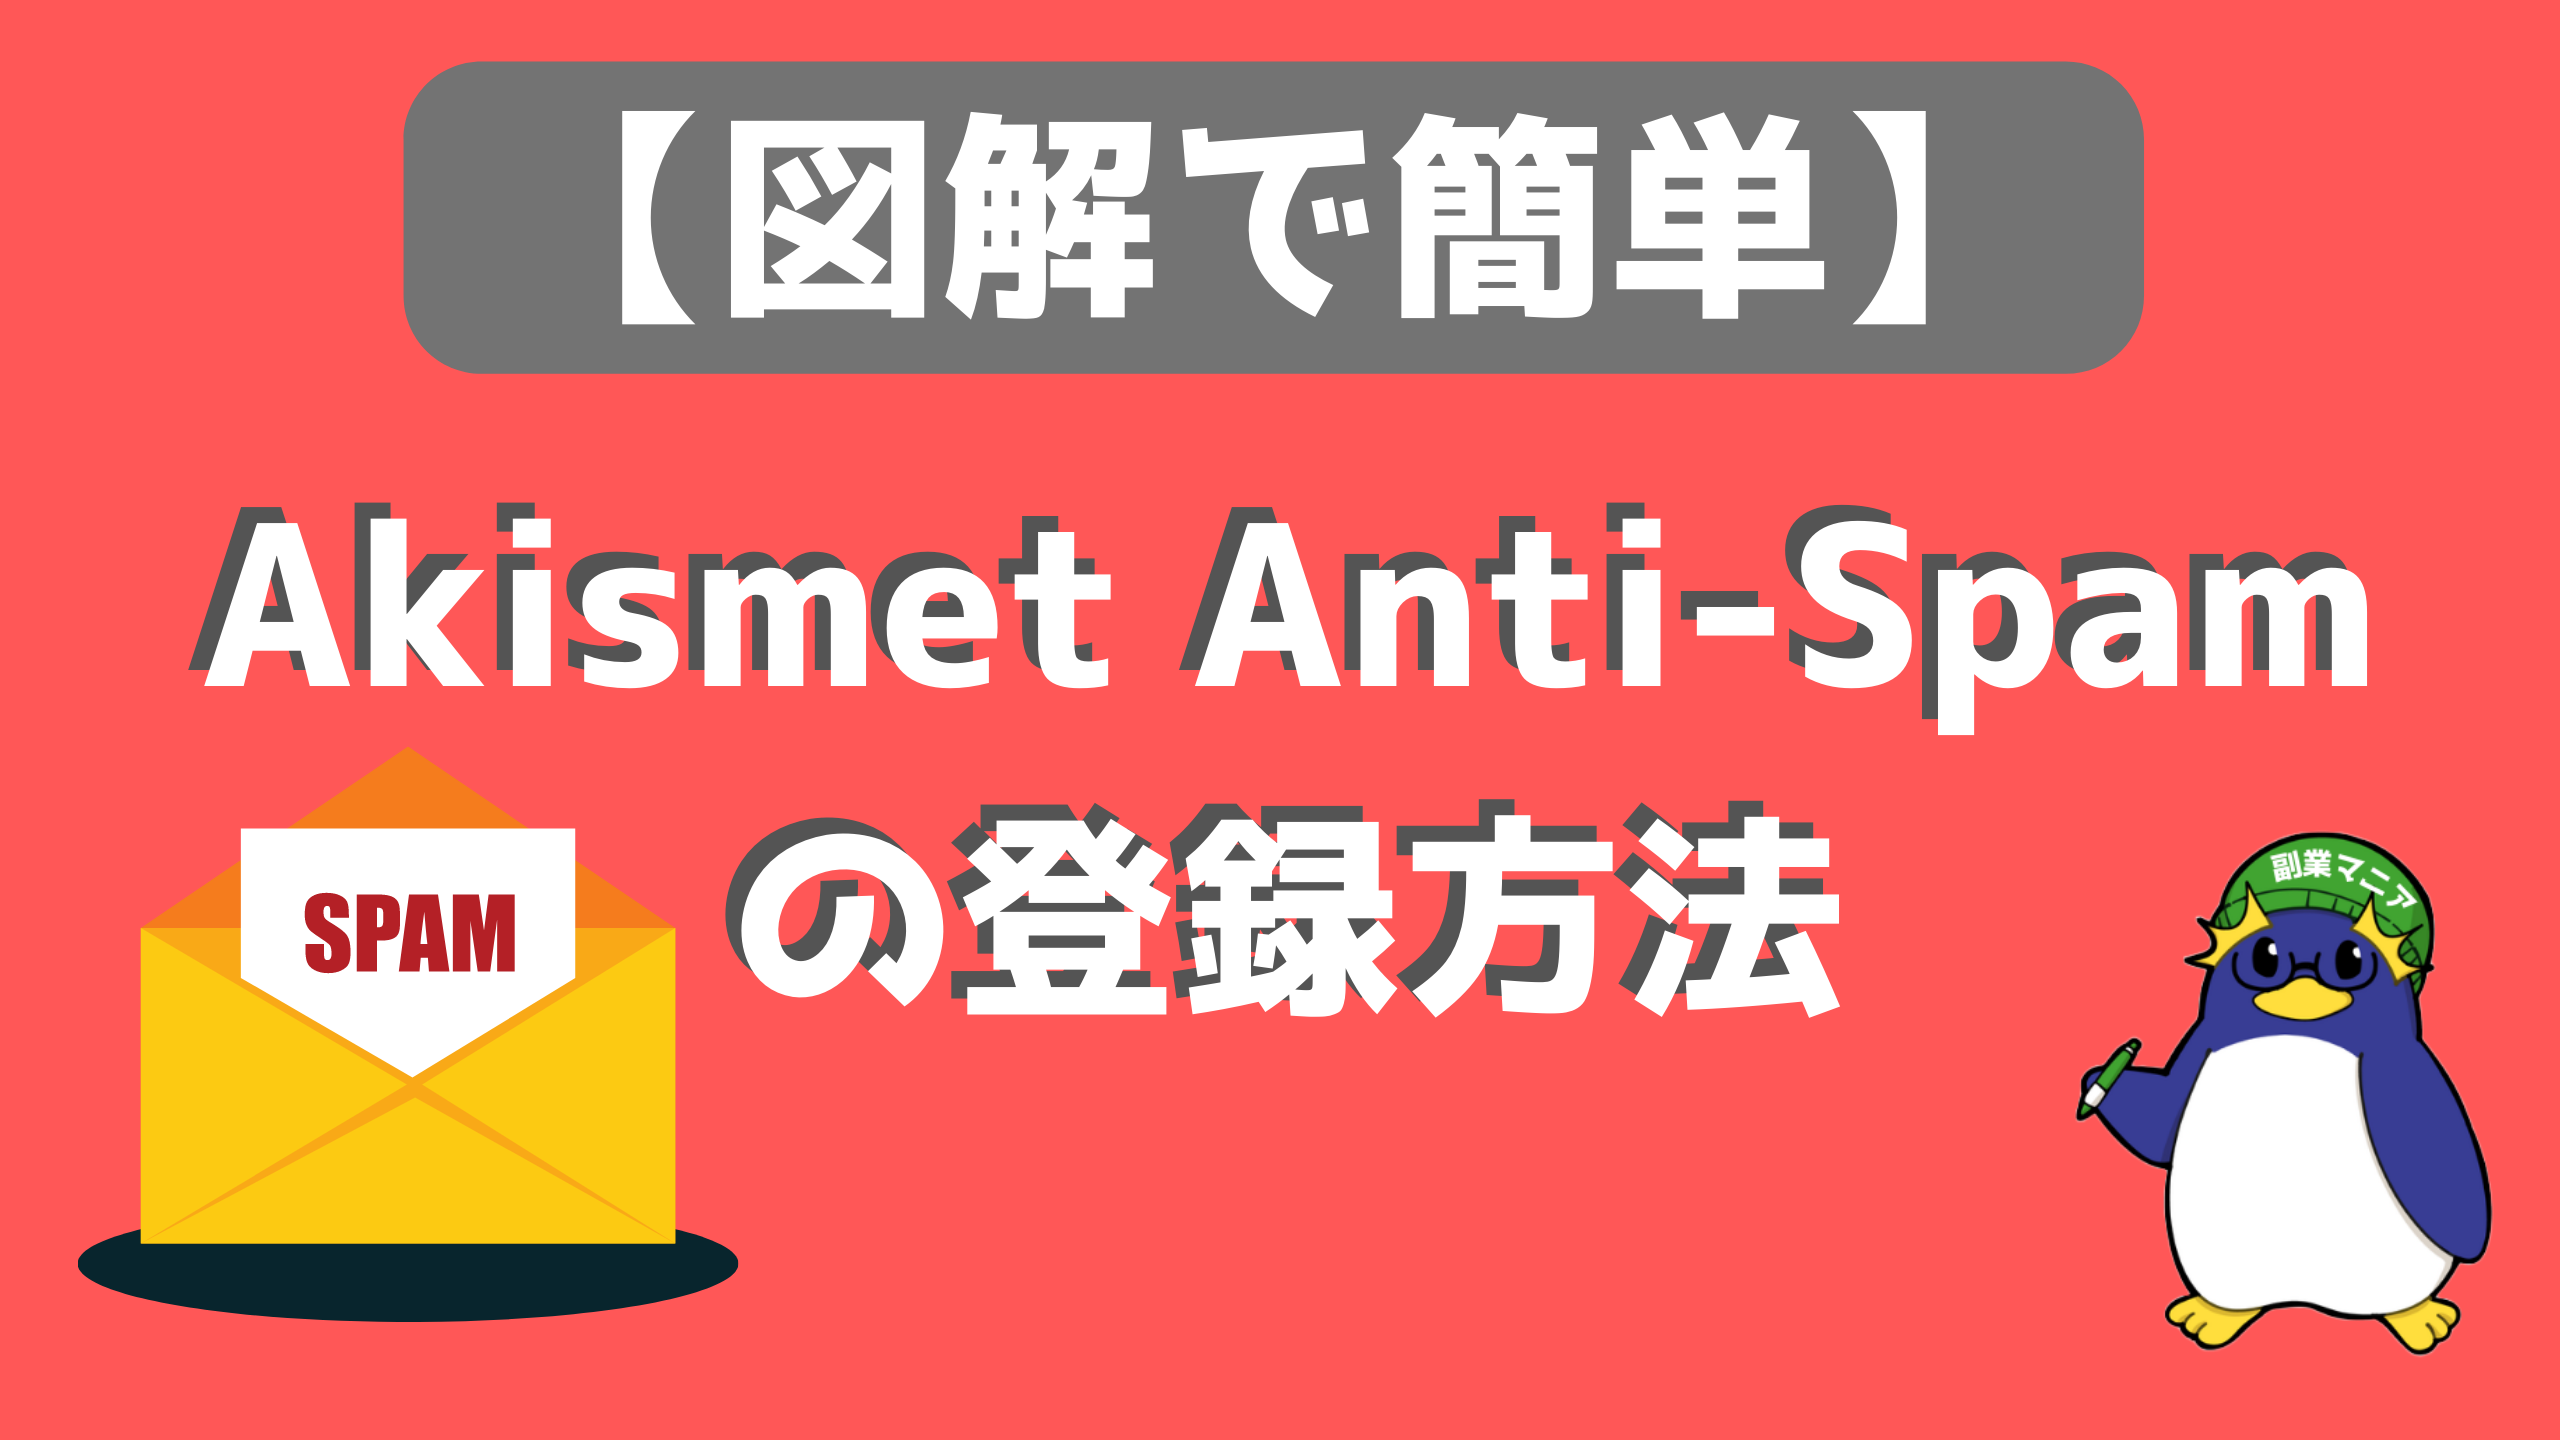 【図解で簡単】Akismet Anti-Spamの登録方法